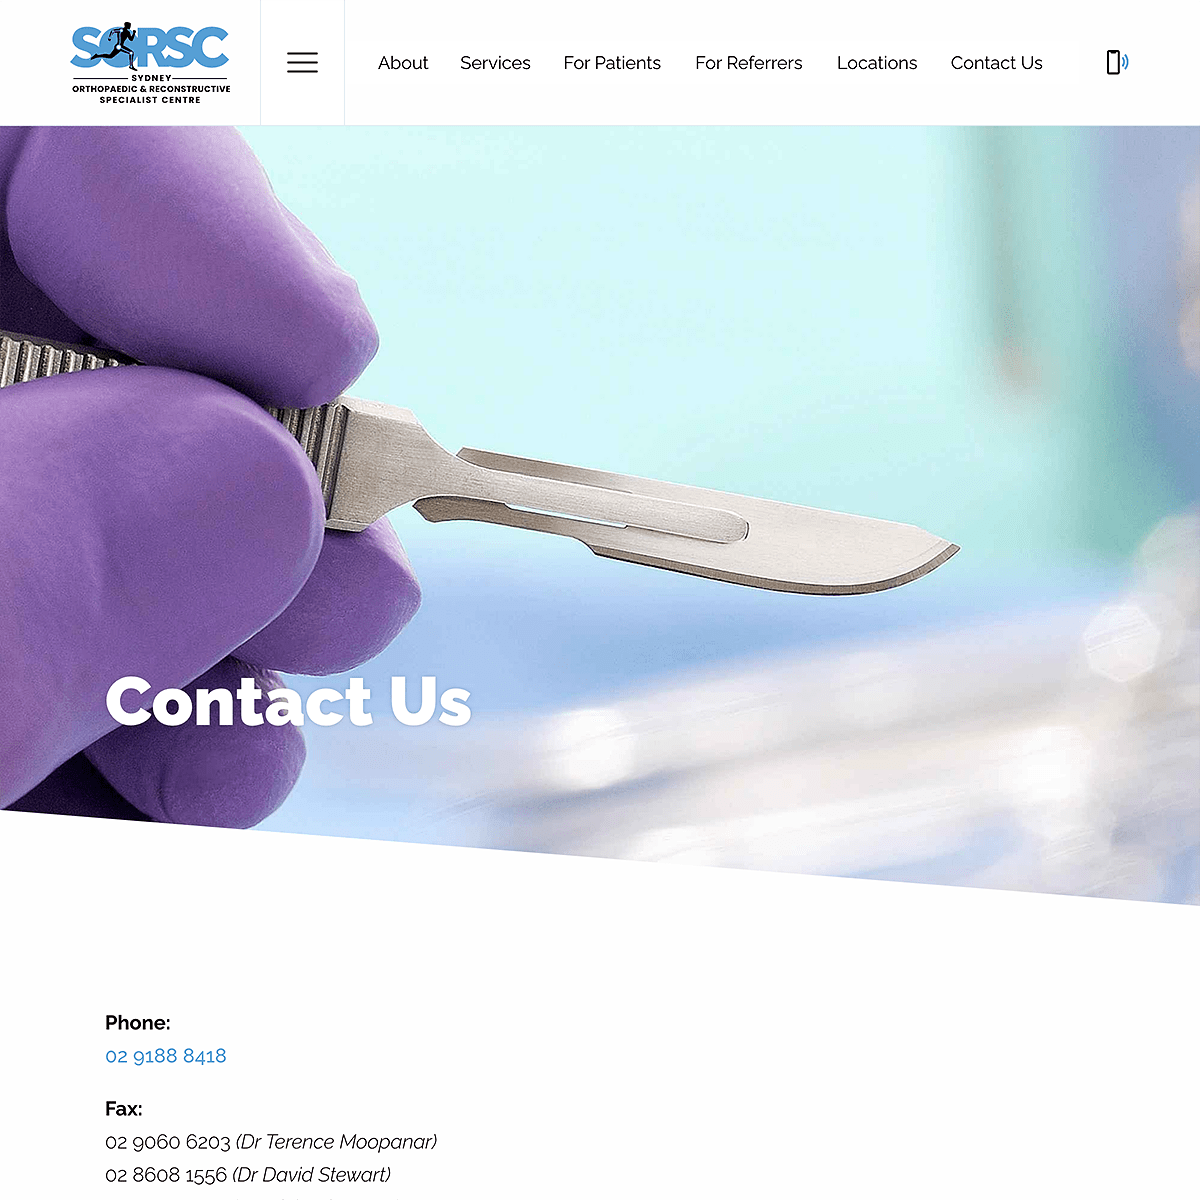 SORSC - Contact Us